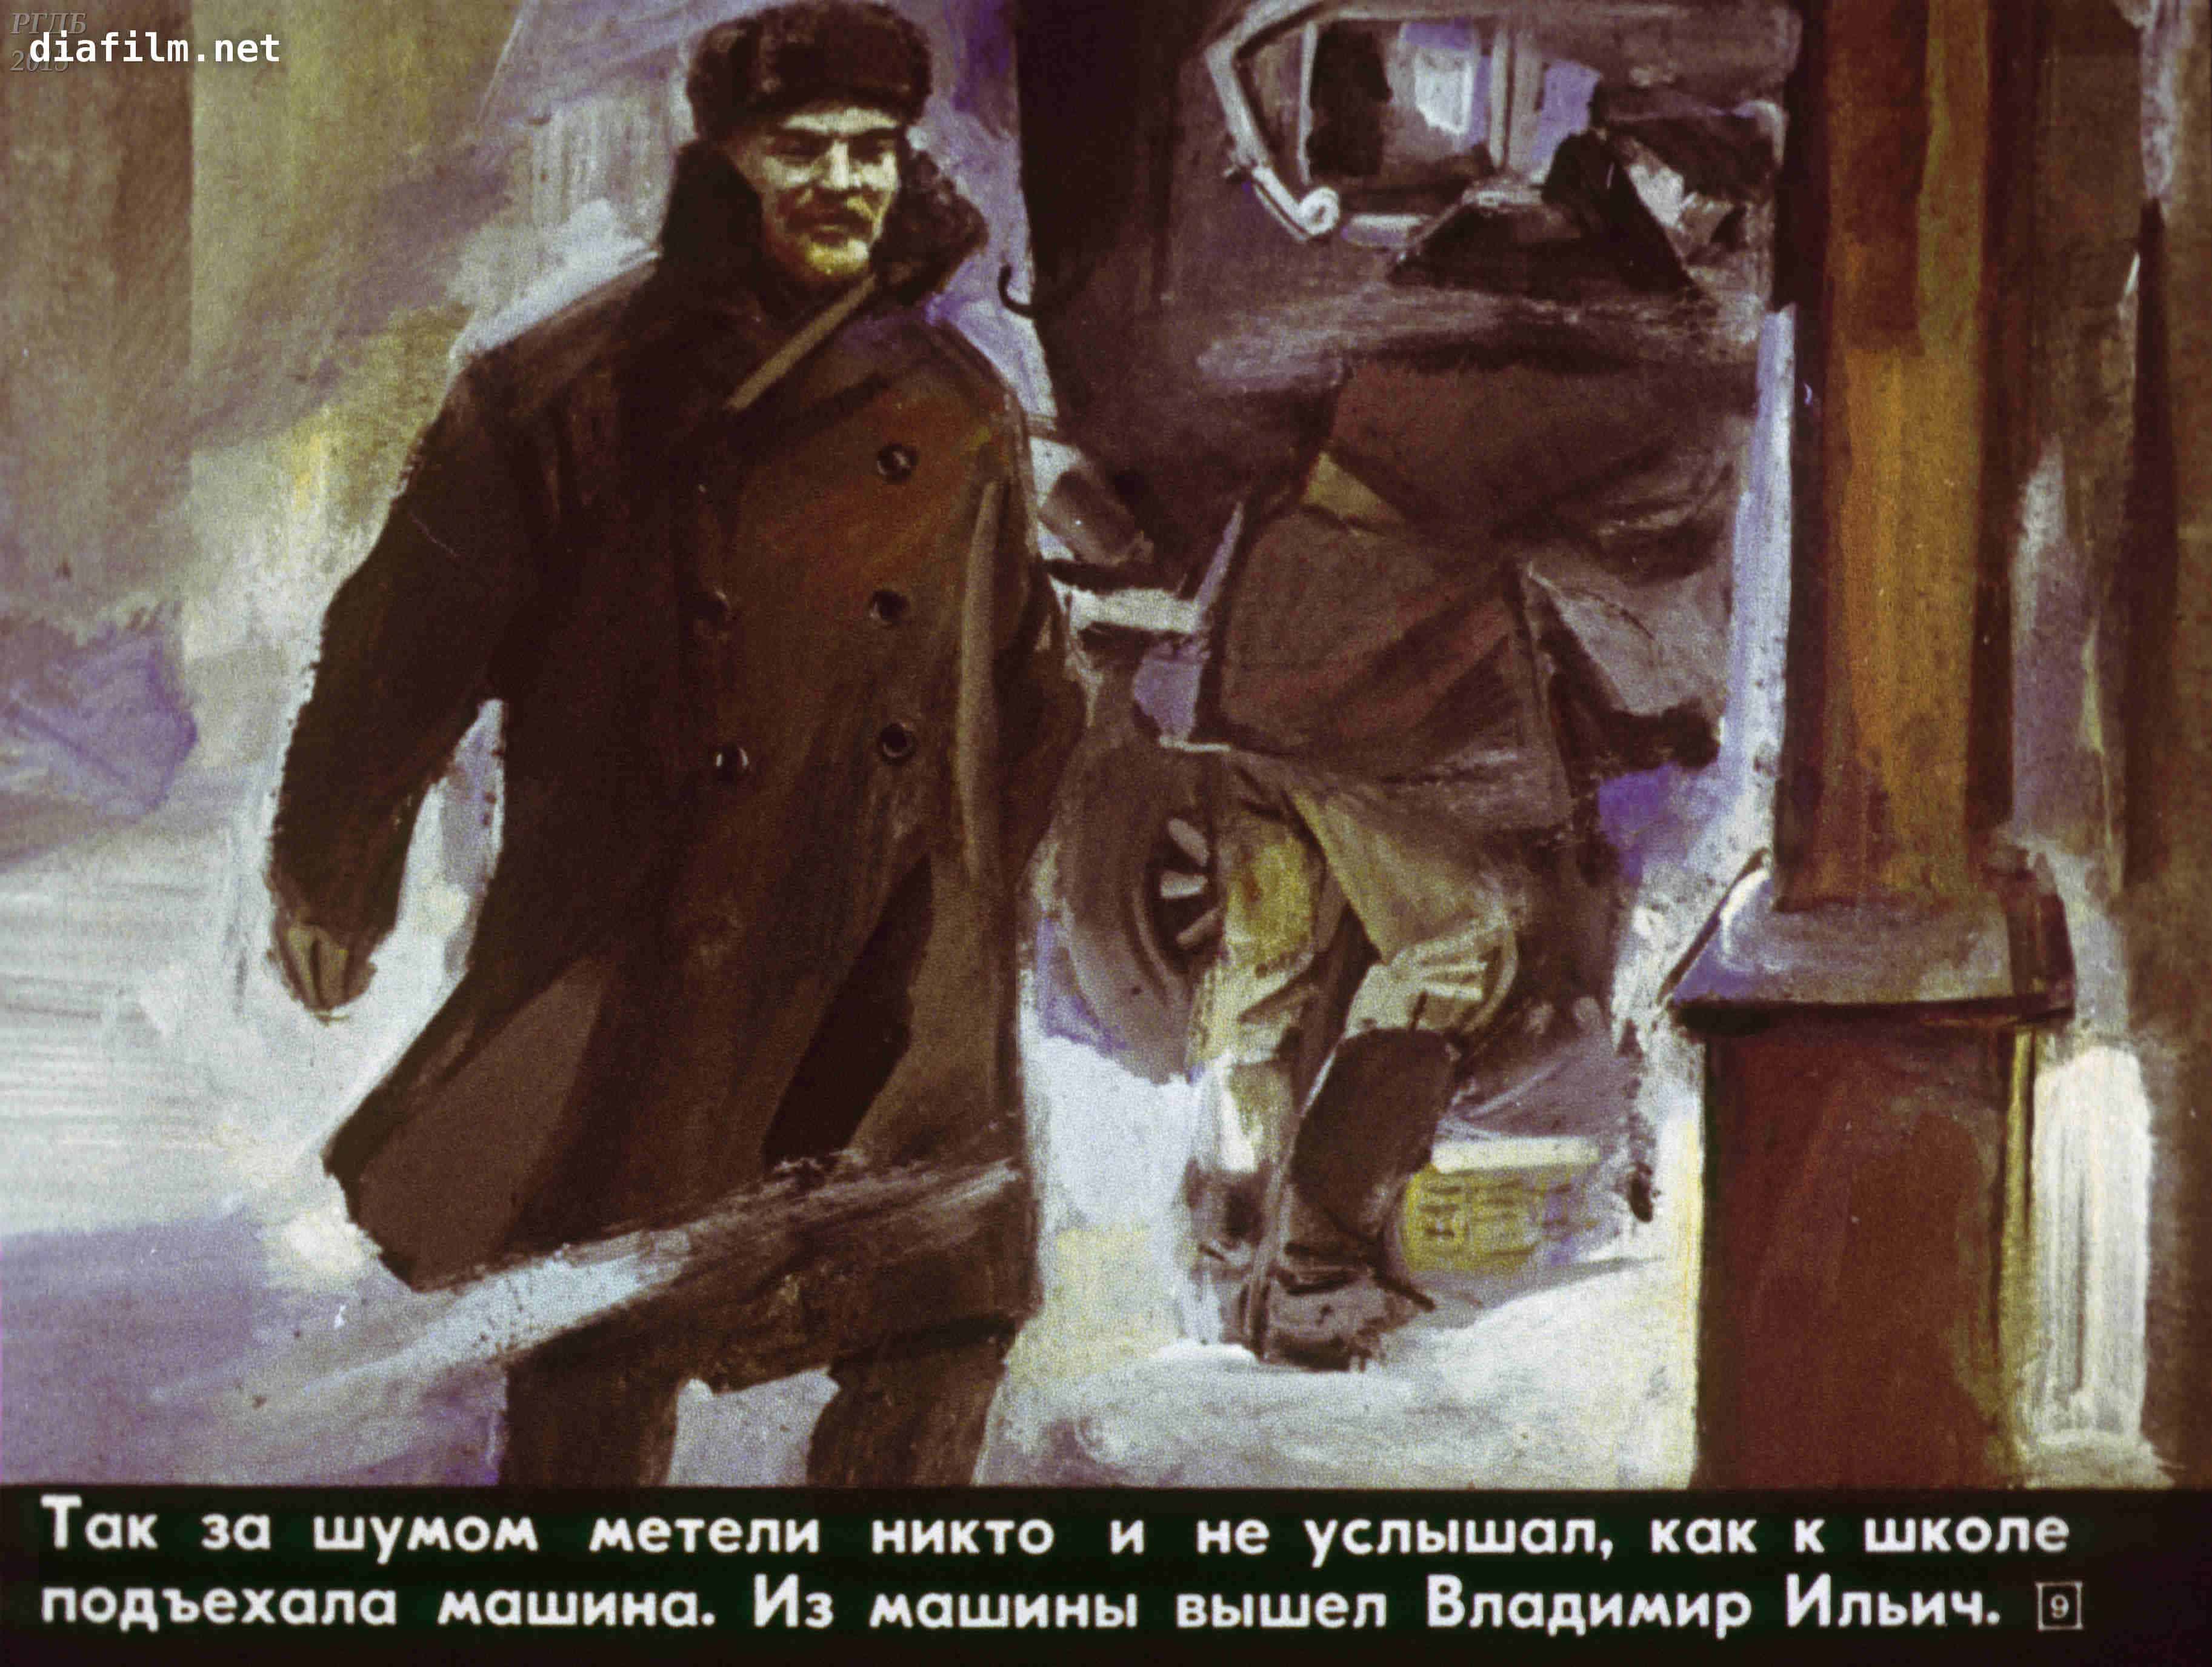 Возвращение елки, ограбление Ленина и фейерверк из винтовок.  Необычные истории и фотографии о Рождестве и революции